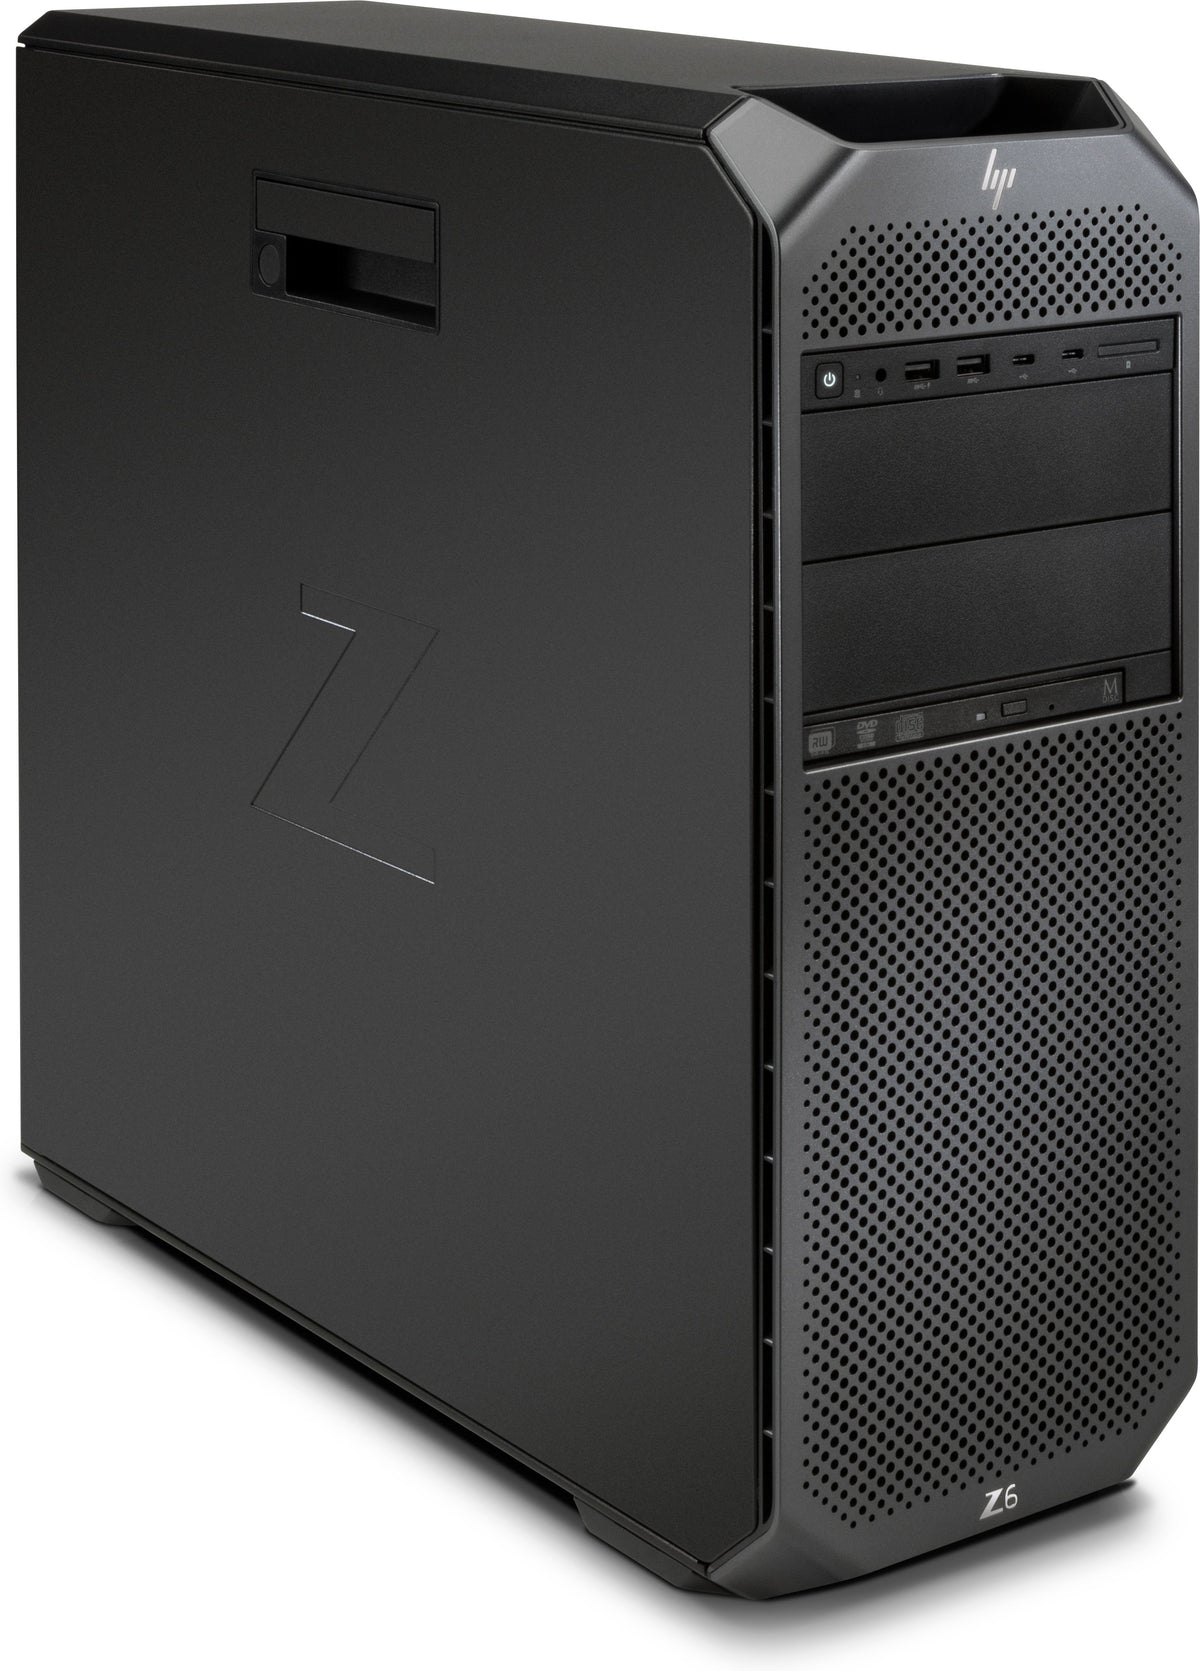 HP Workstation Z6 G4 - Torre - 4U - 1 x Xeon Silver 4108 / 1,8 GHz - vPro - RAM 32 GB - HDD 1 TB - Grabadora de DVD - sin controlador de imagen - GigE - Win 10 Pro para estaciones de trabajo de 64 bits - monitor: ninguno - negro